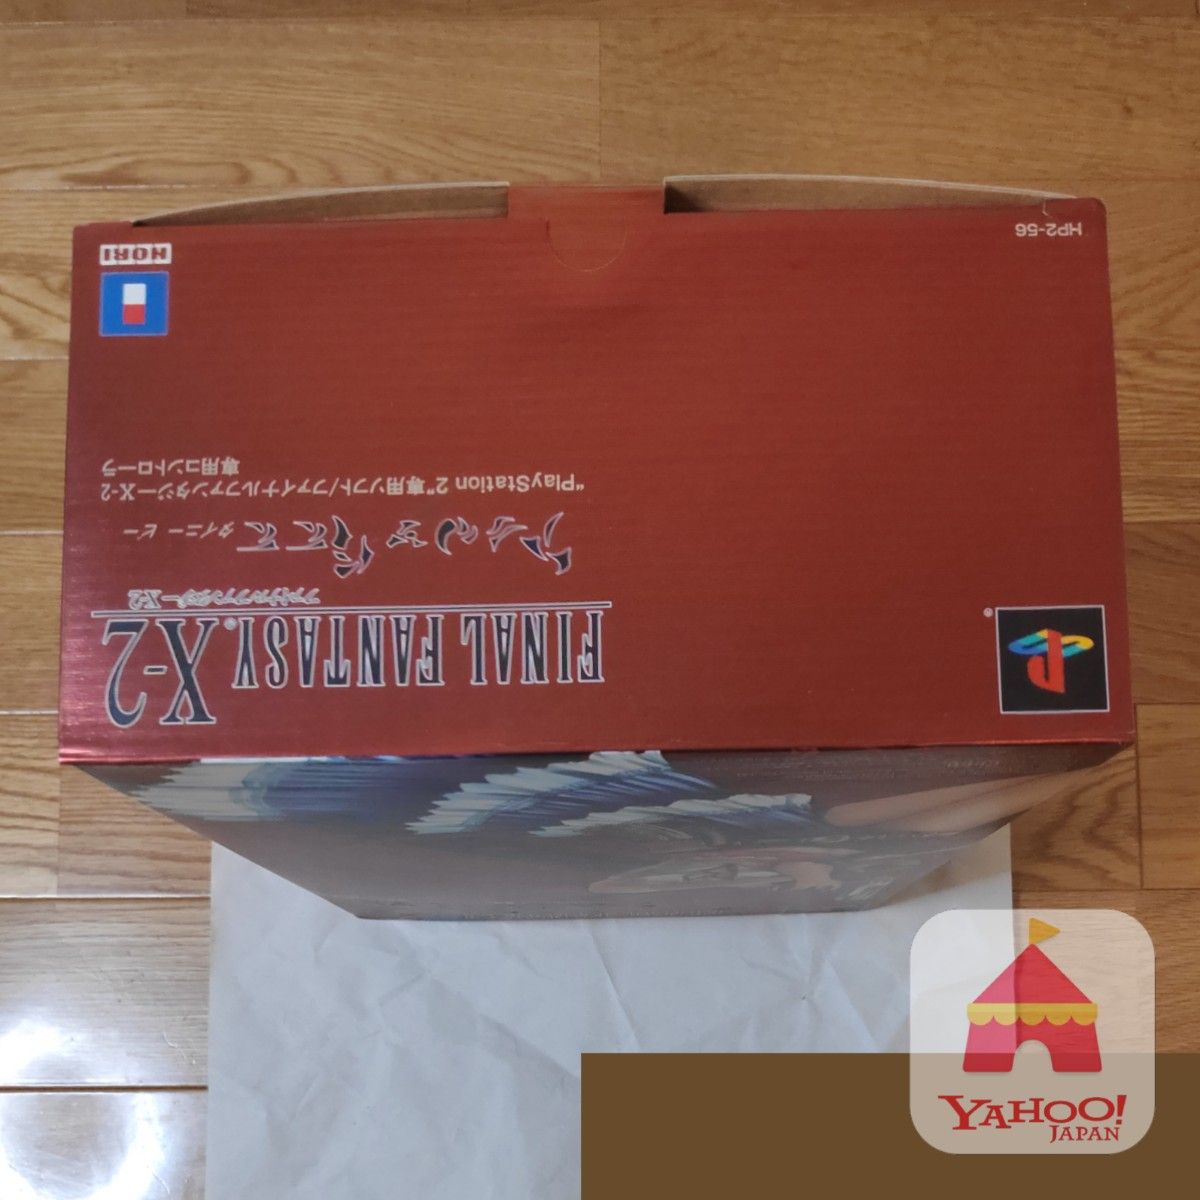 【未使用】PS2 ファイナルファンタジーX-2専用コントローラー タイニービー